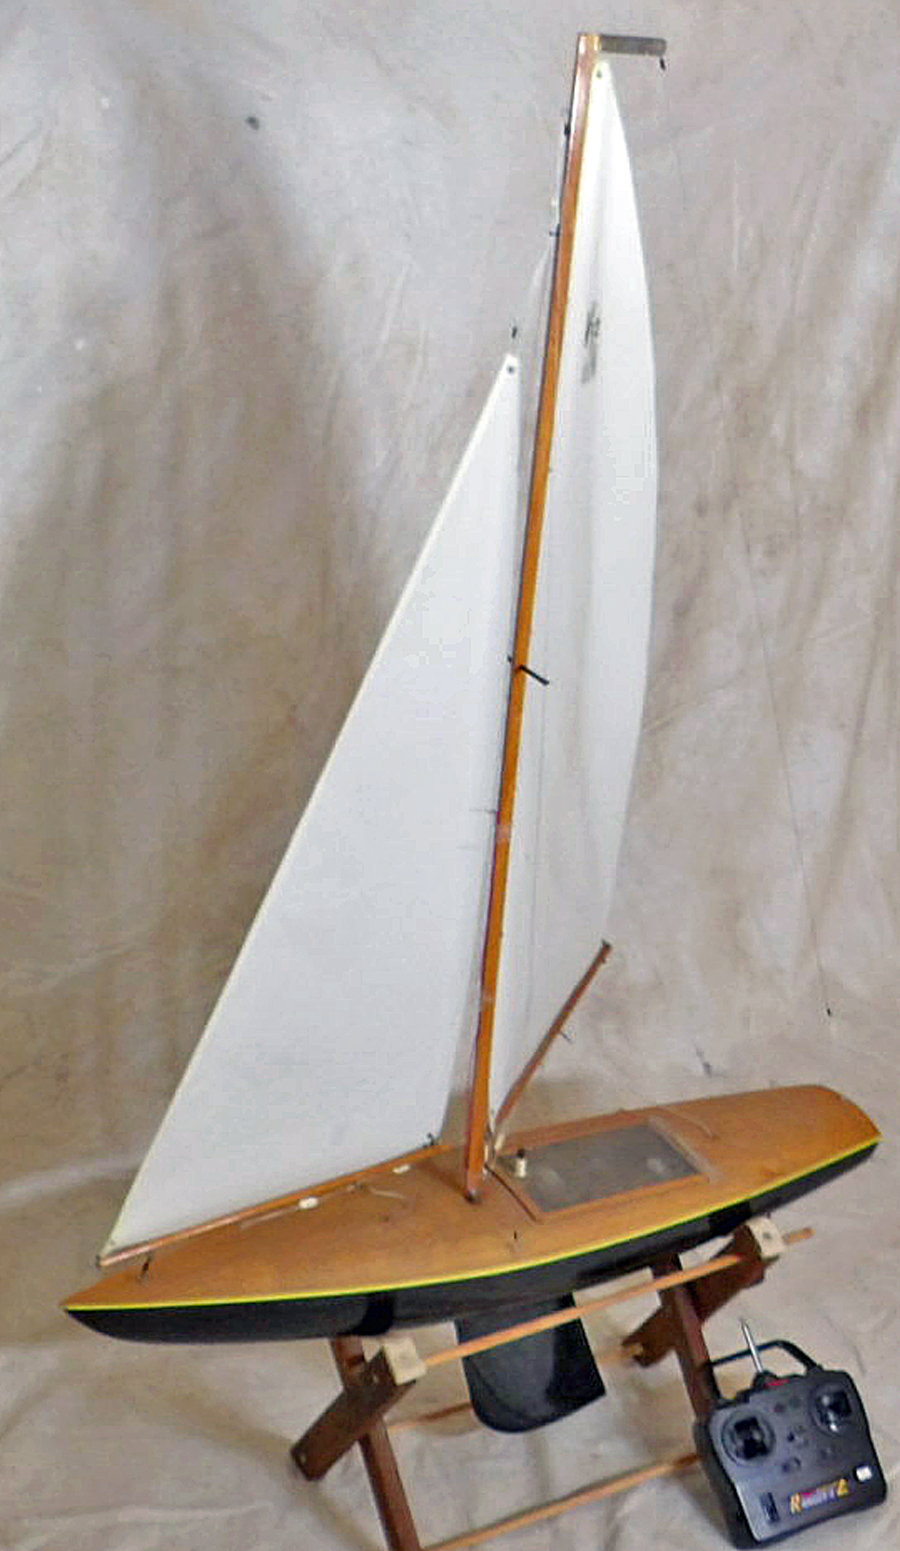 v32 rc sailboat for sale